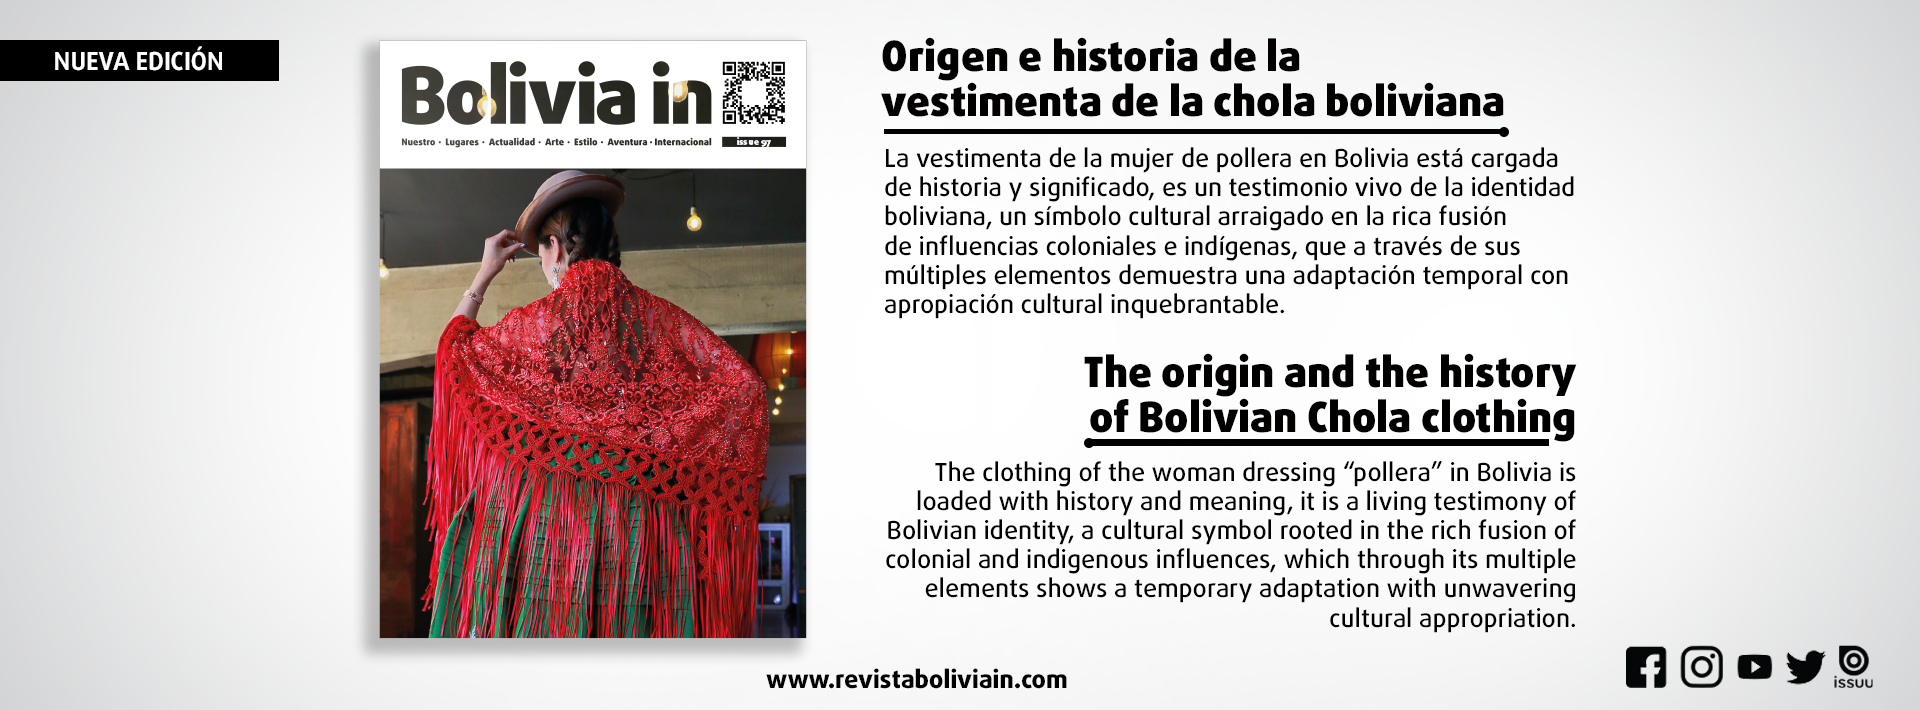 Revista Bolivia in